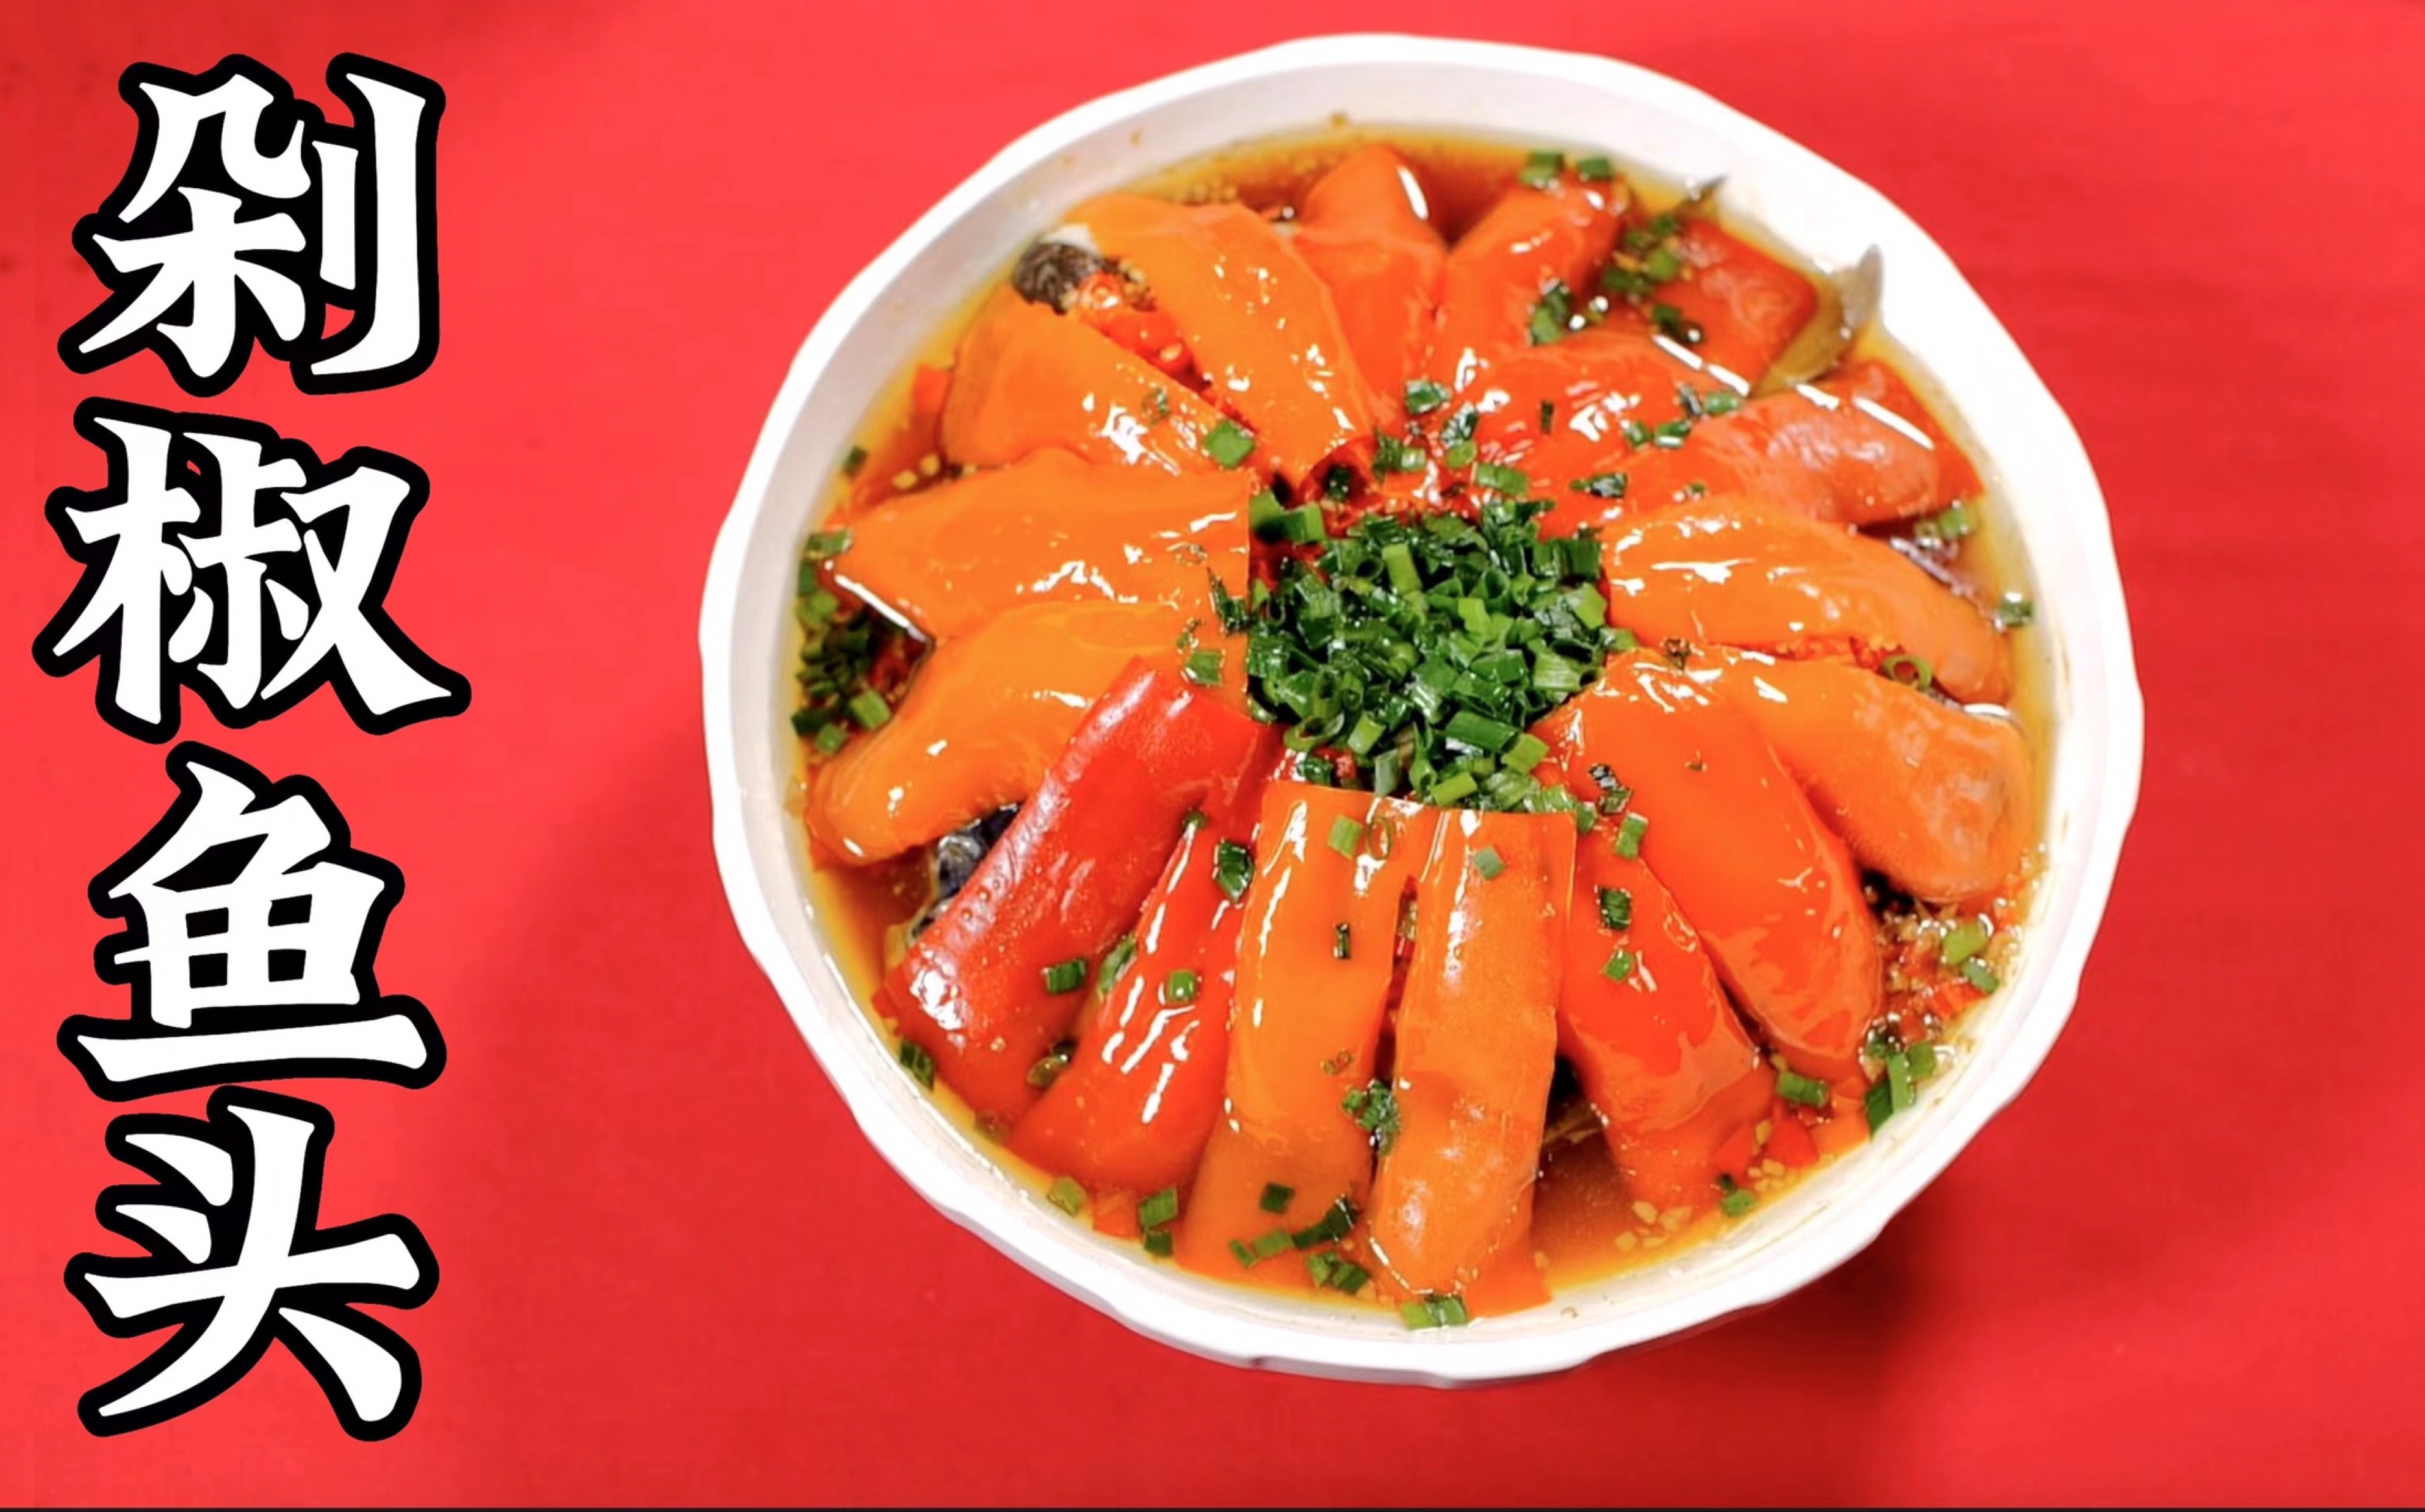 传说中的湘菜之WANG剁椒鱼头，家常版菜谱来喽快做起来吧